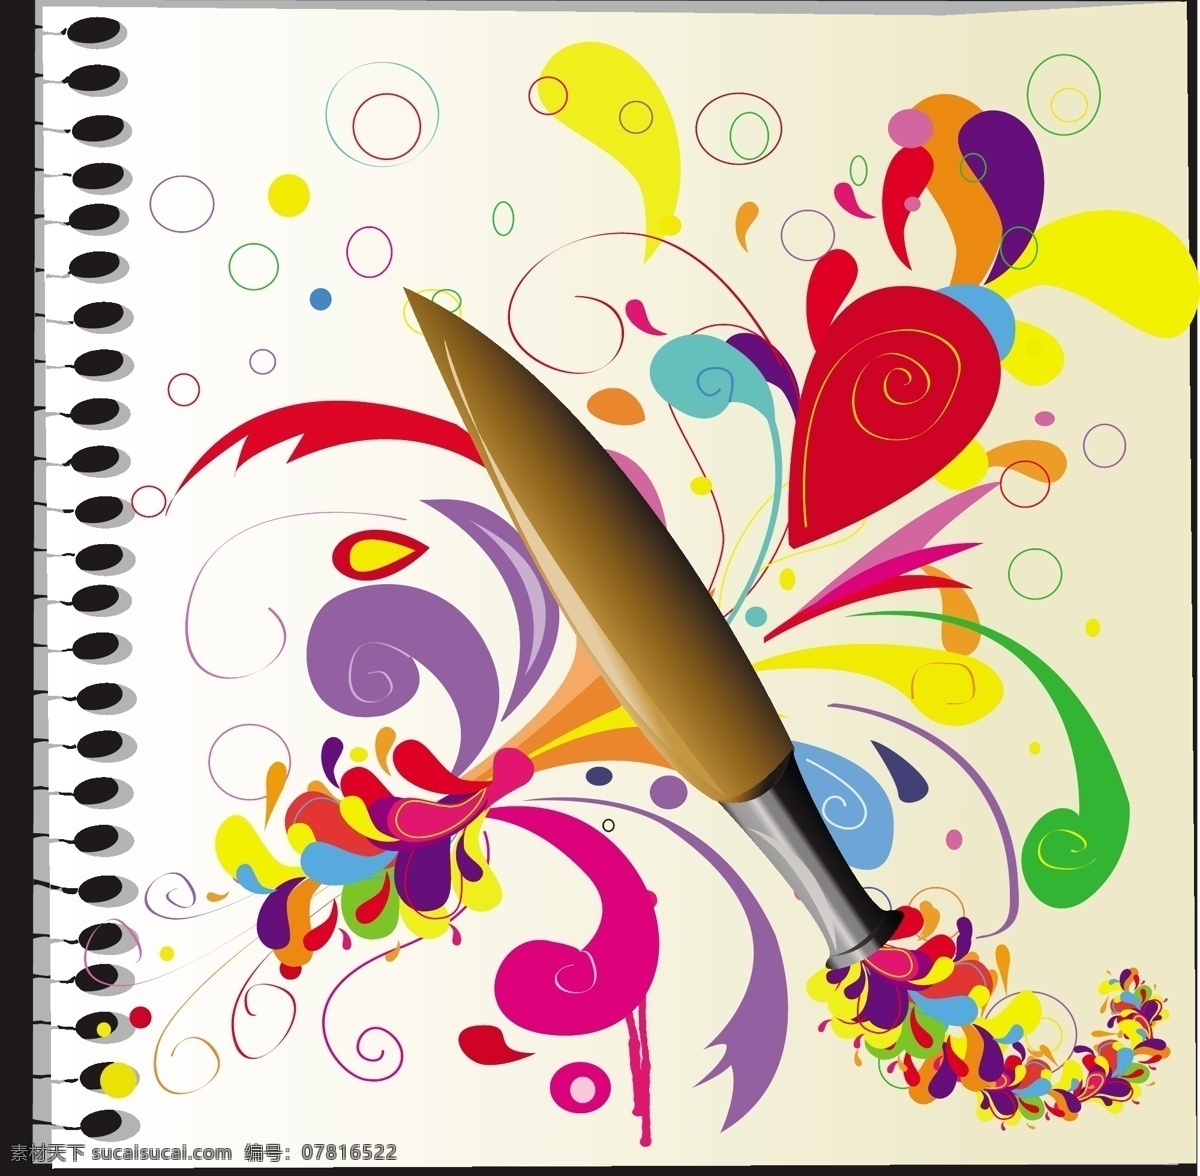 时尚 炫彩 毛笔 背景 笔 笔记本 笔刷 彩色 潮流 创意 底纹 花纹 色彩 图案 矢量 矢量图 花纹花边